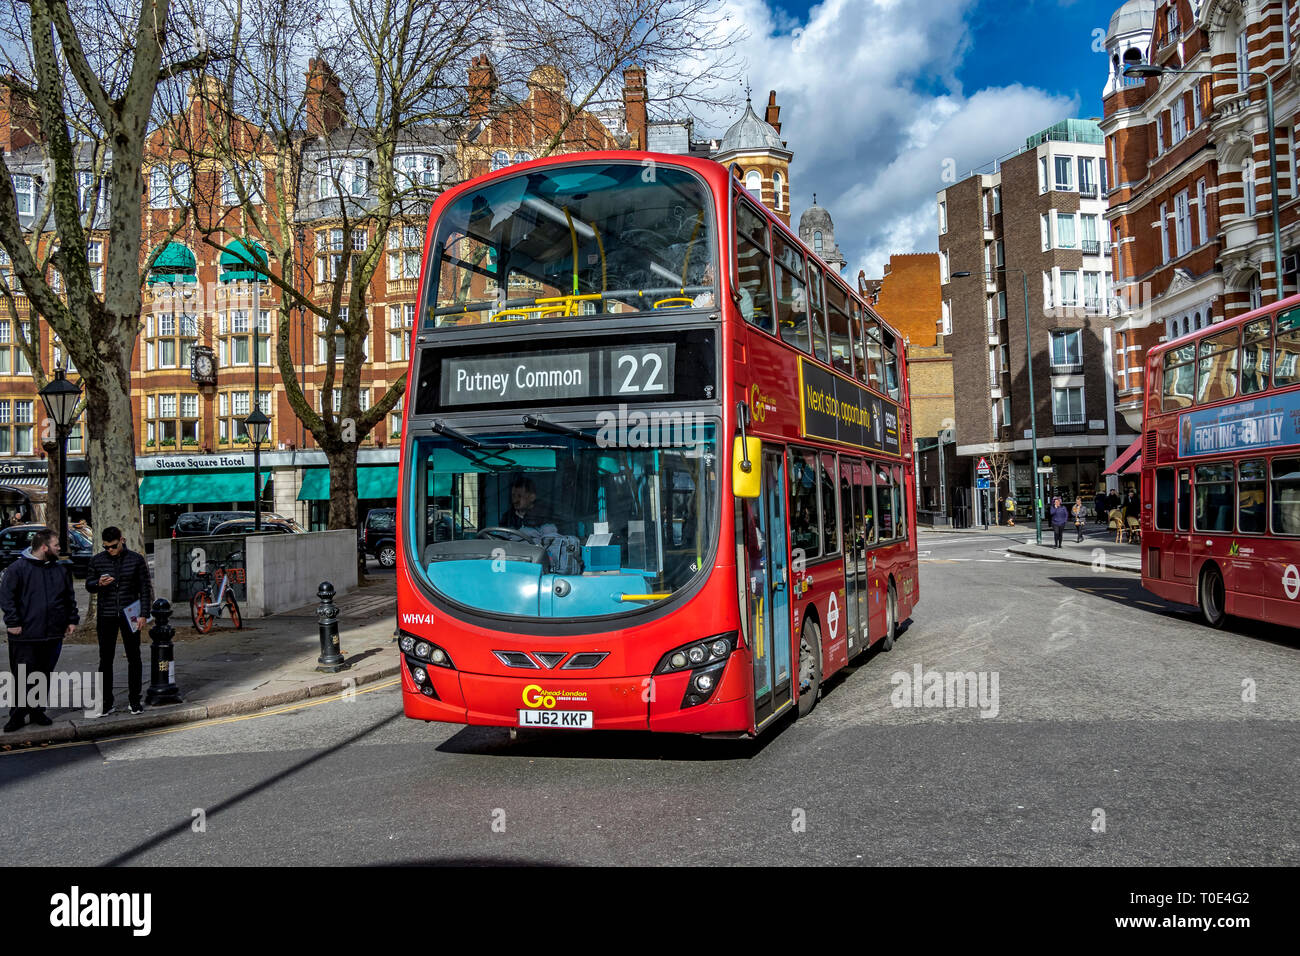 Ein roter London Bus der Linie 22 mit Doppeldecker fährt auf dem Weg nach Putney Common, London, Großbritannien, um den Sloane Square herum Stockfoto